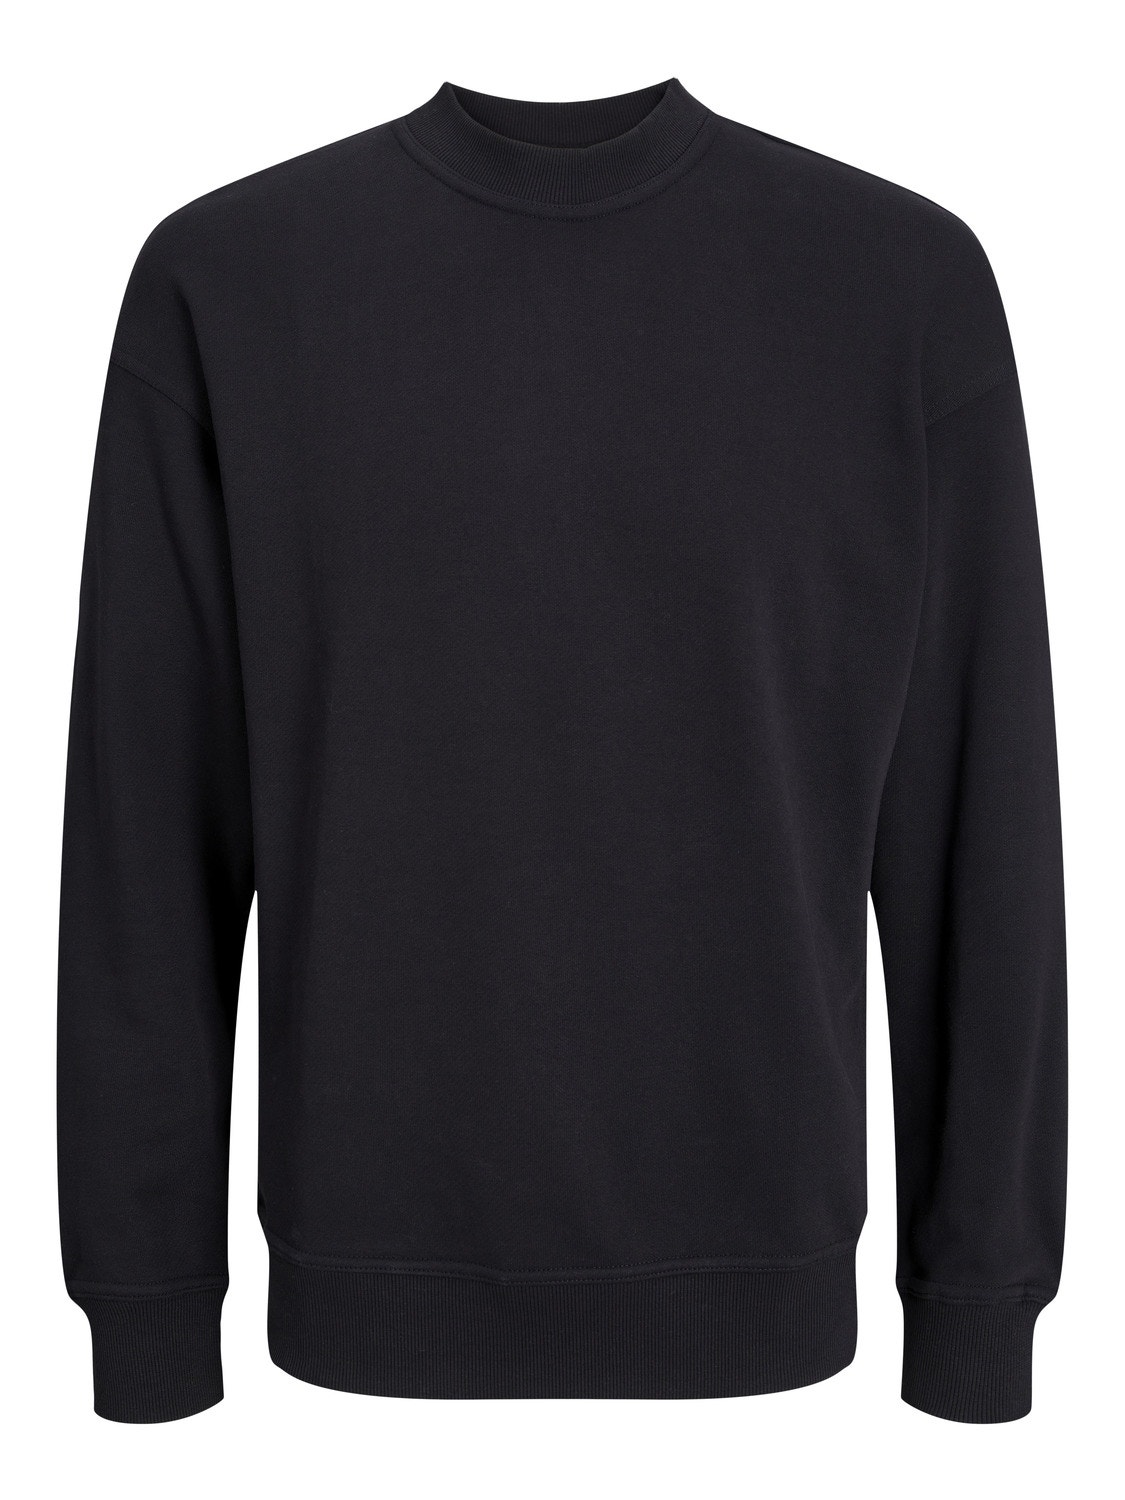 Jack & Jones Oversize Fit Crew neck Sweatshirt -Black - 12251330